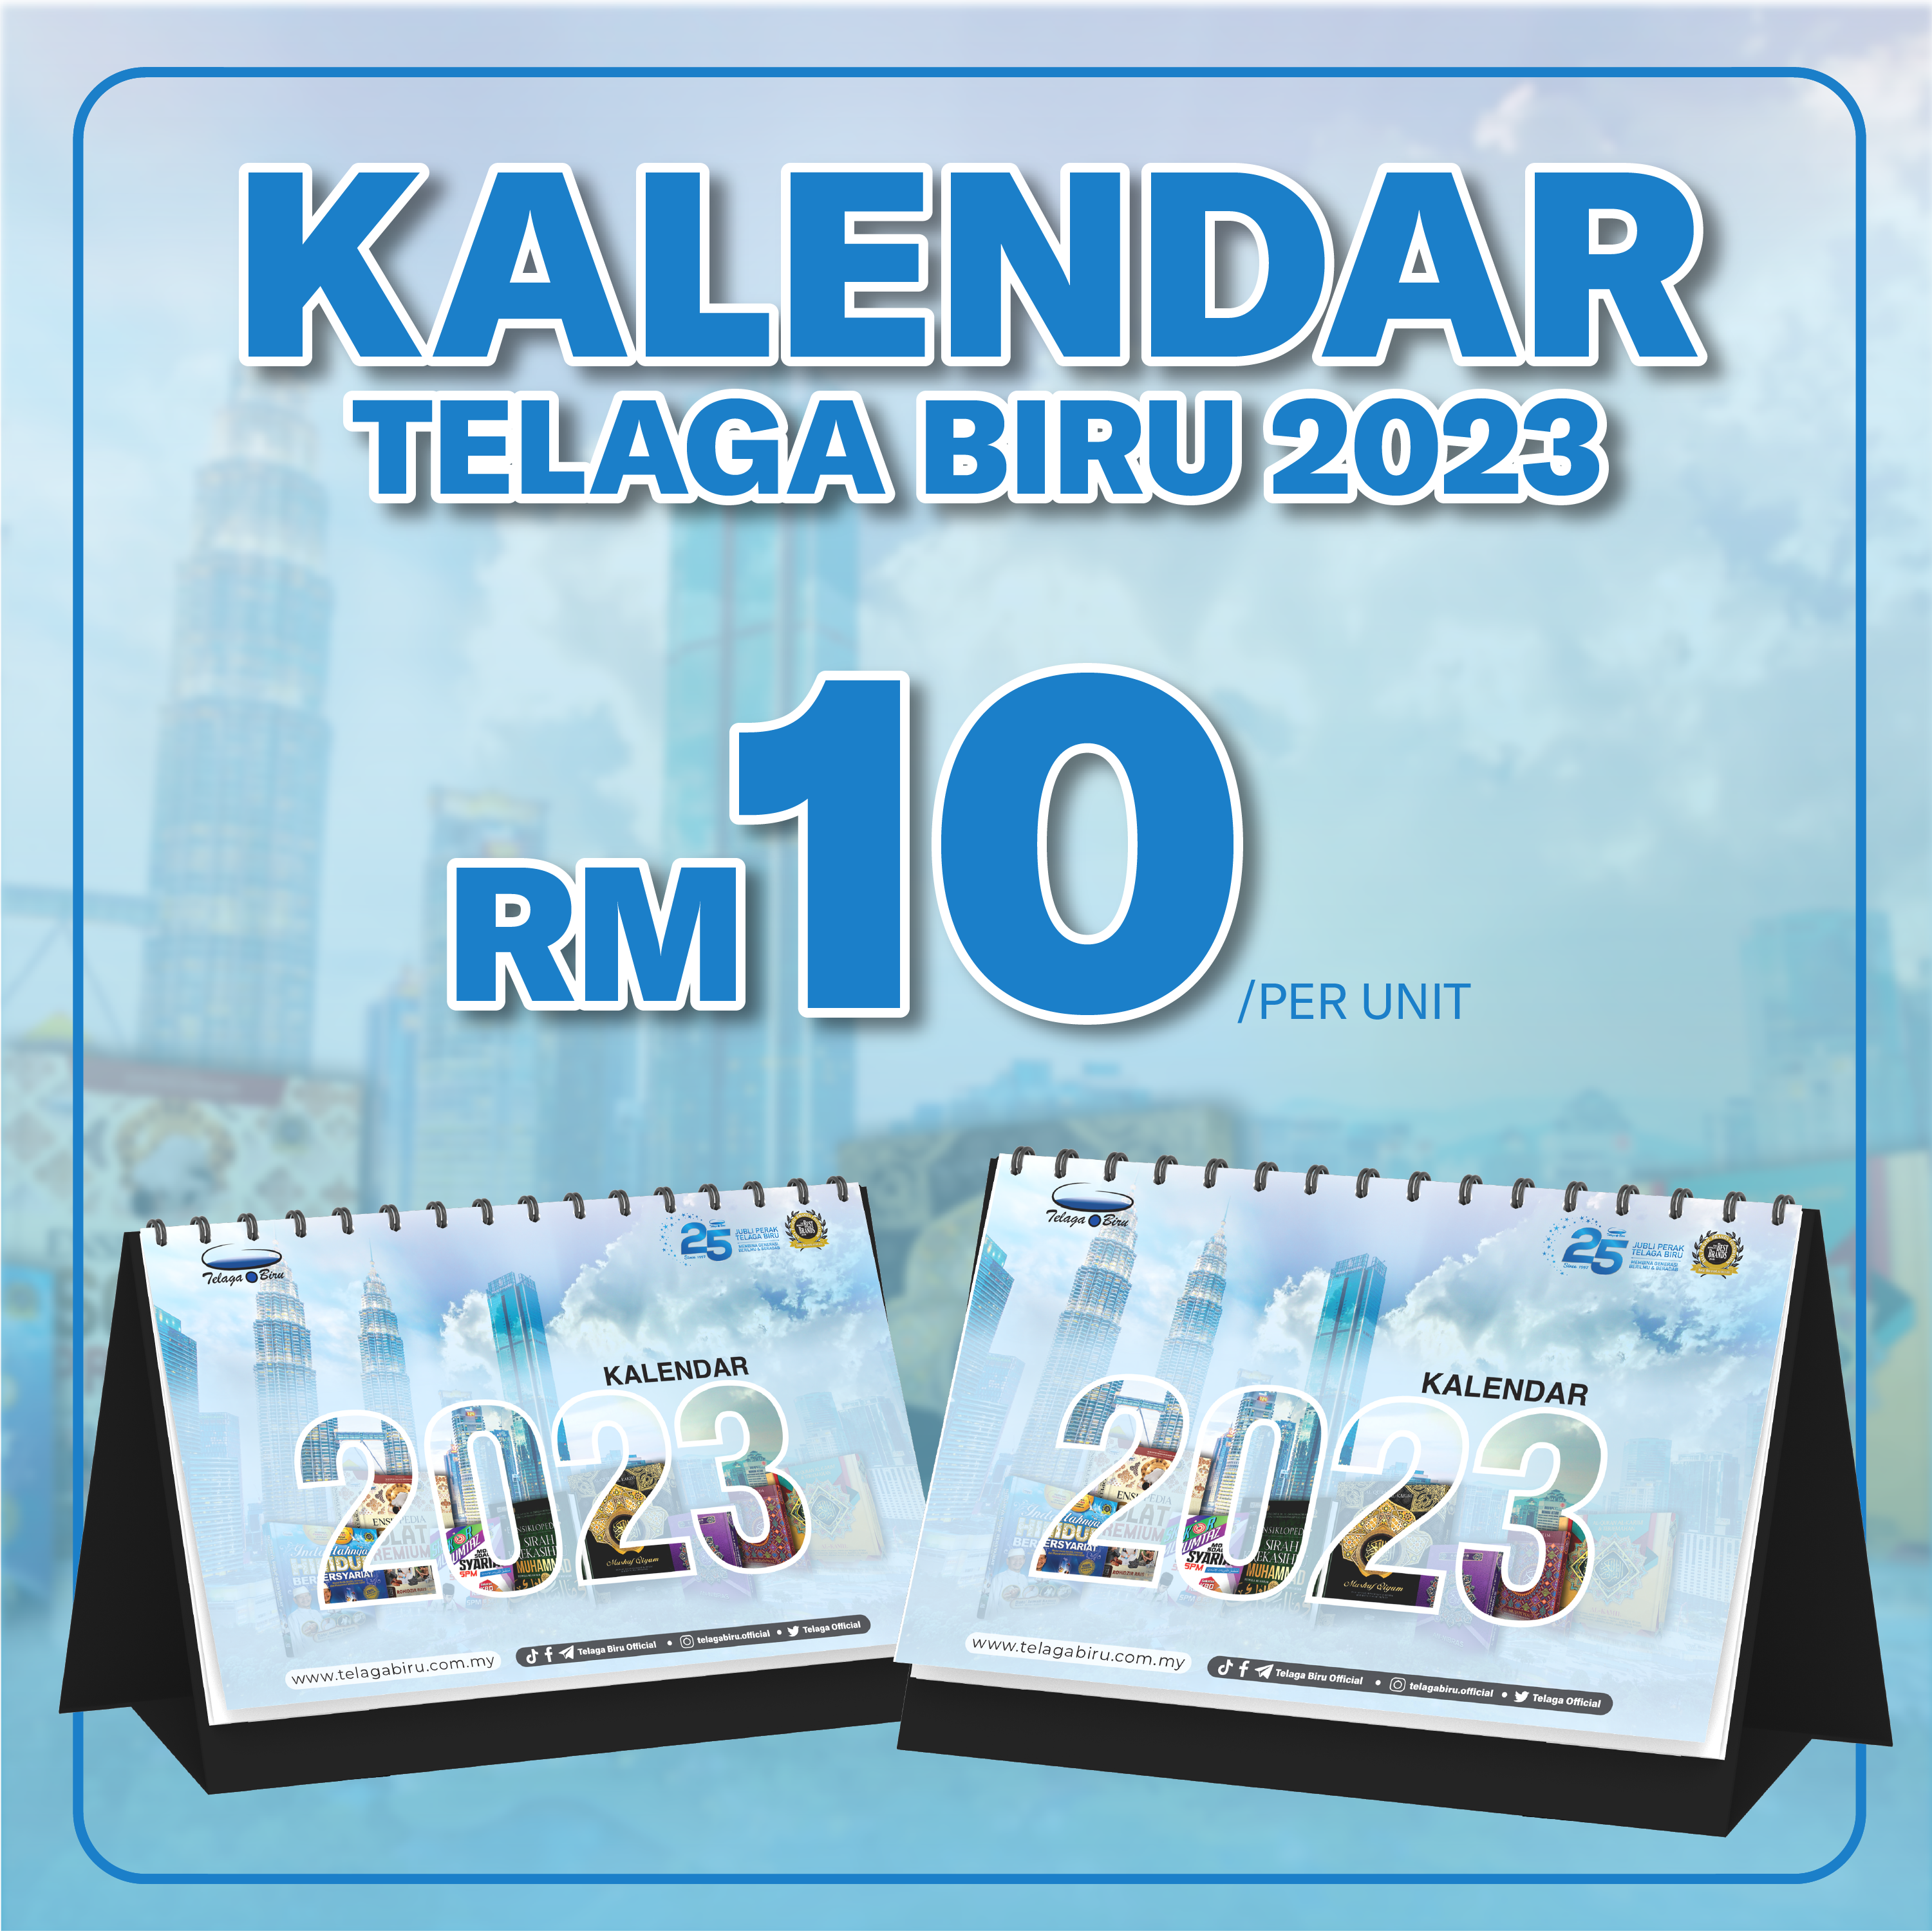 Kalendar Premium Telaga Biru 2023